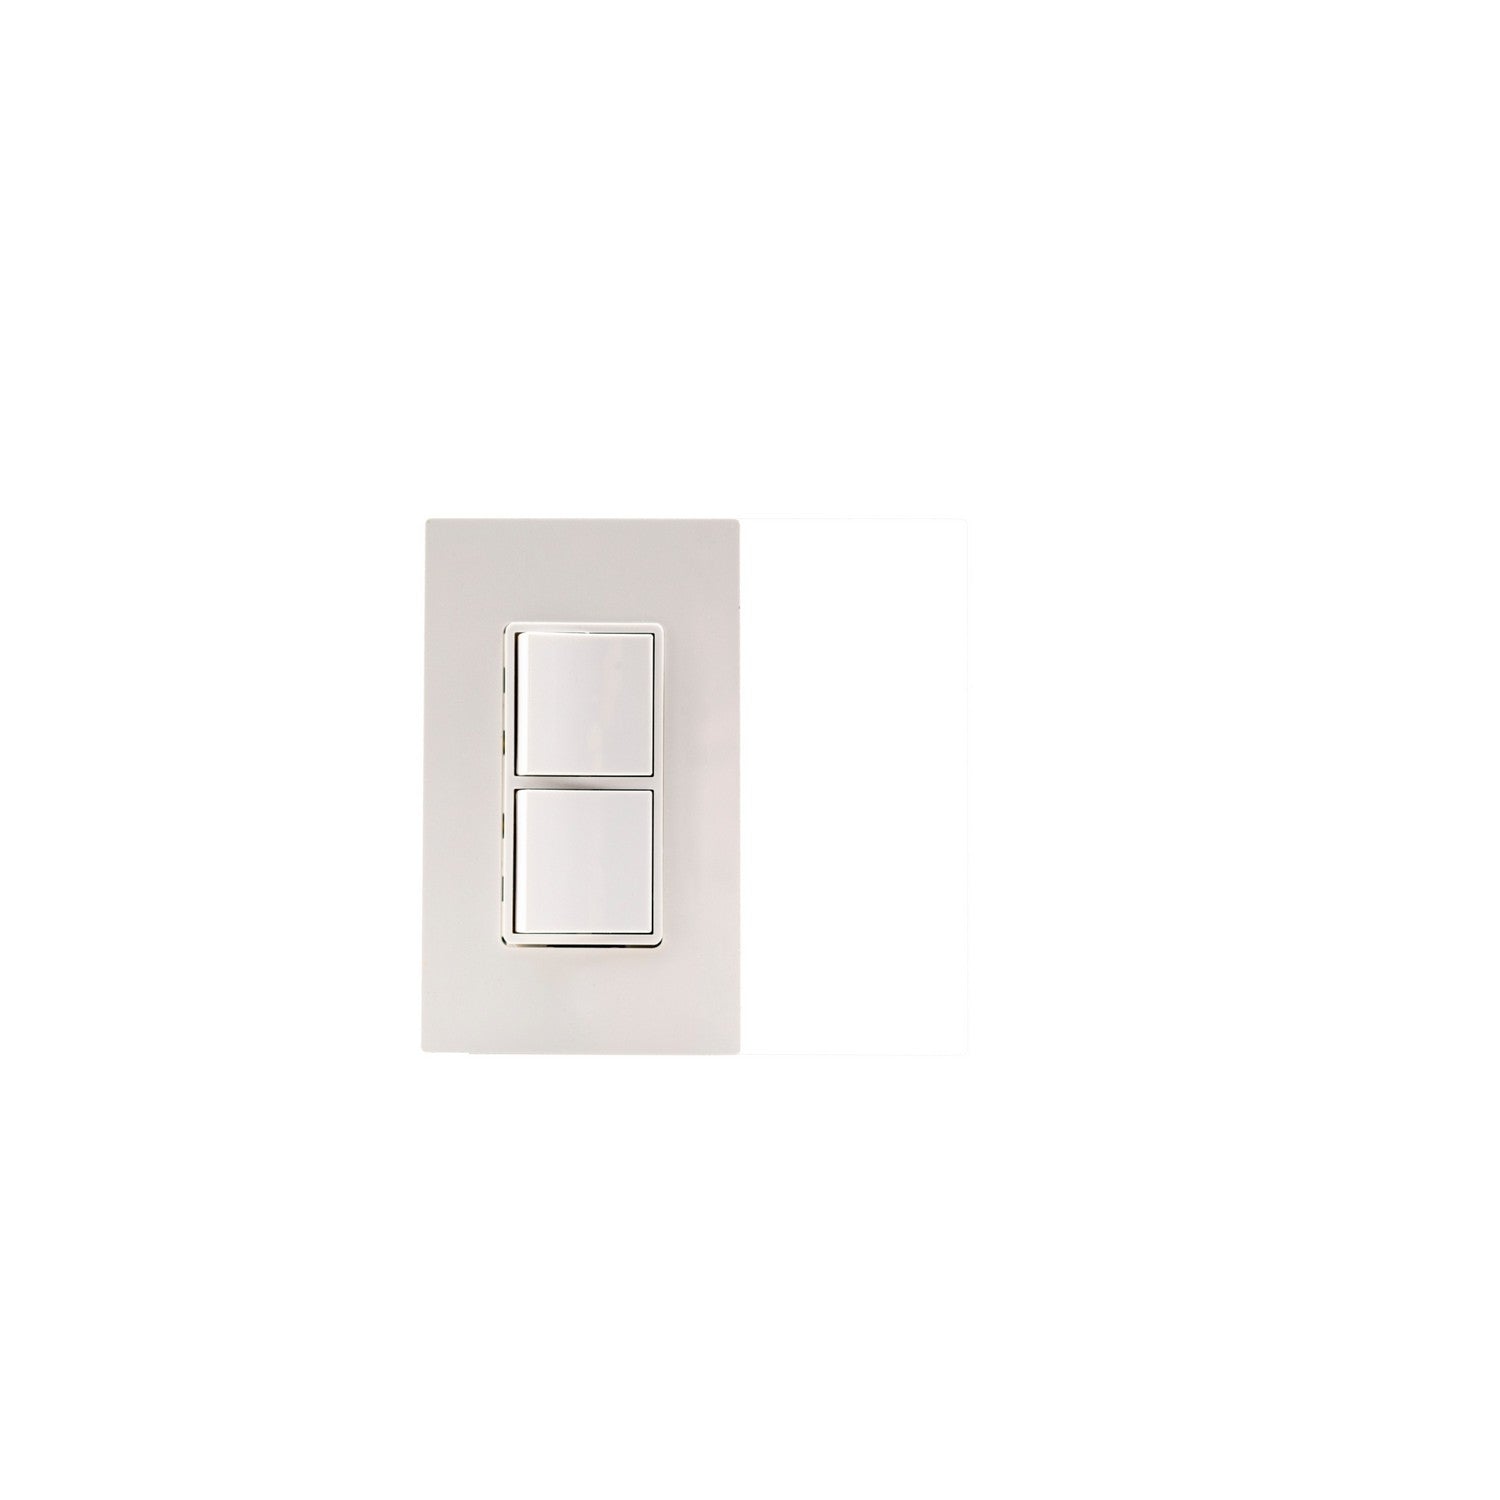 Eurofase - EFSWPW - Single Duplex,Plate And Box - White